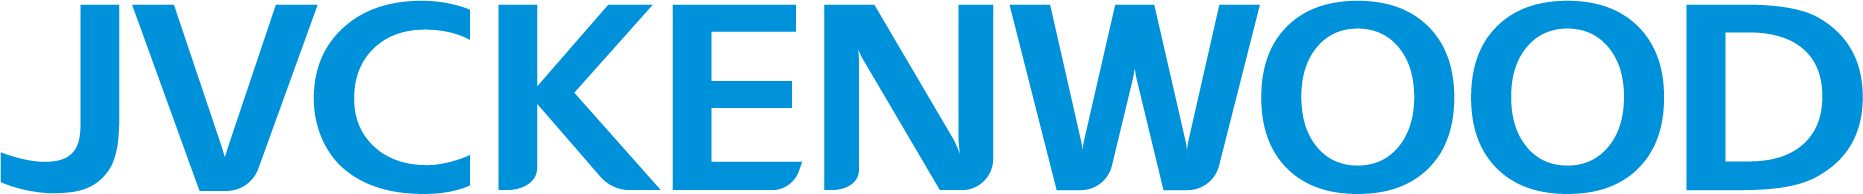 jvckenwood_Logo